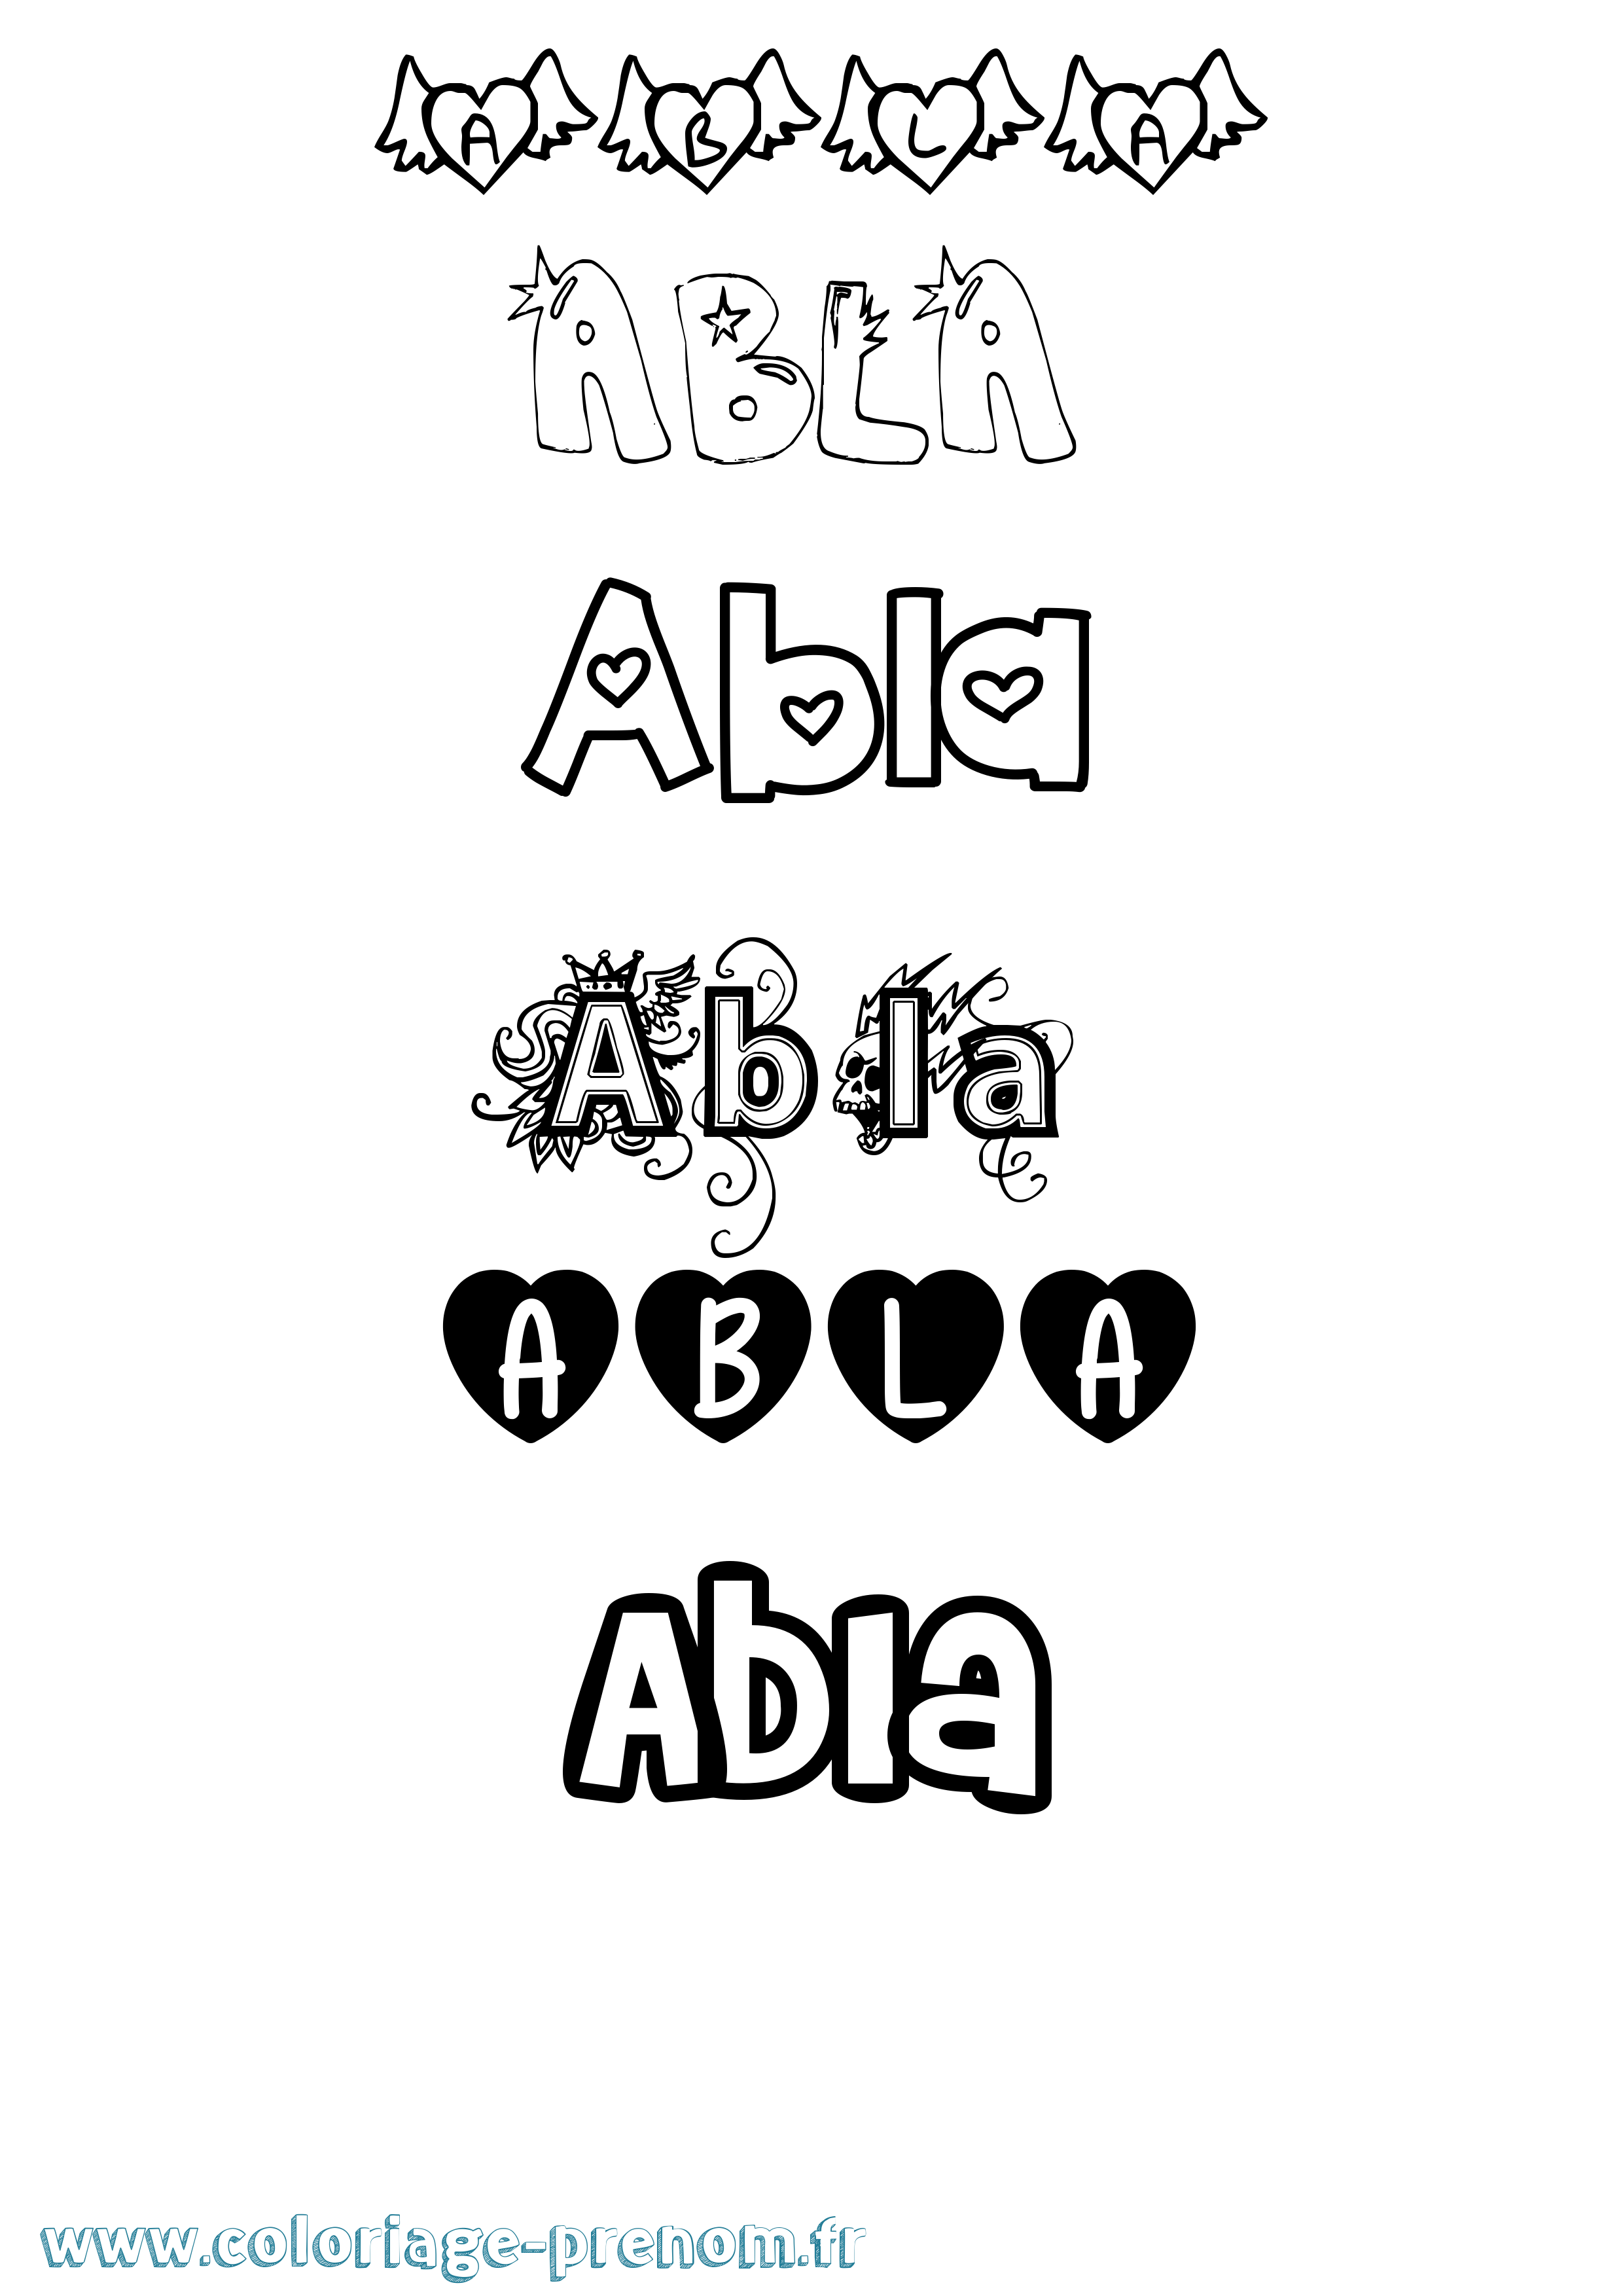 Coloriage prénom Abla Girly